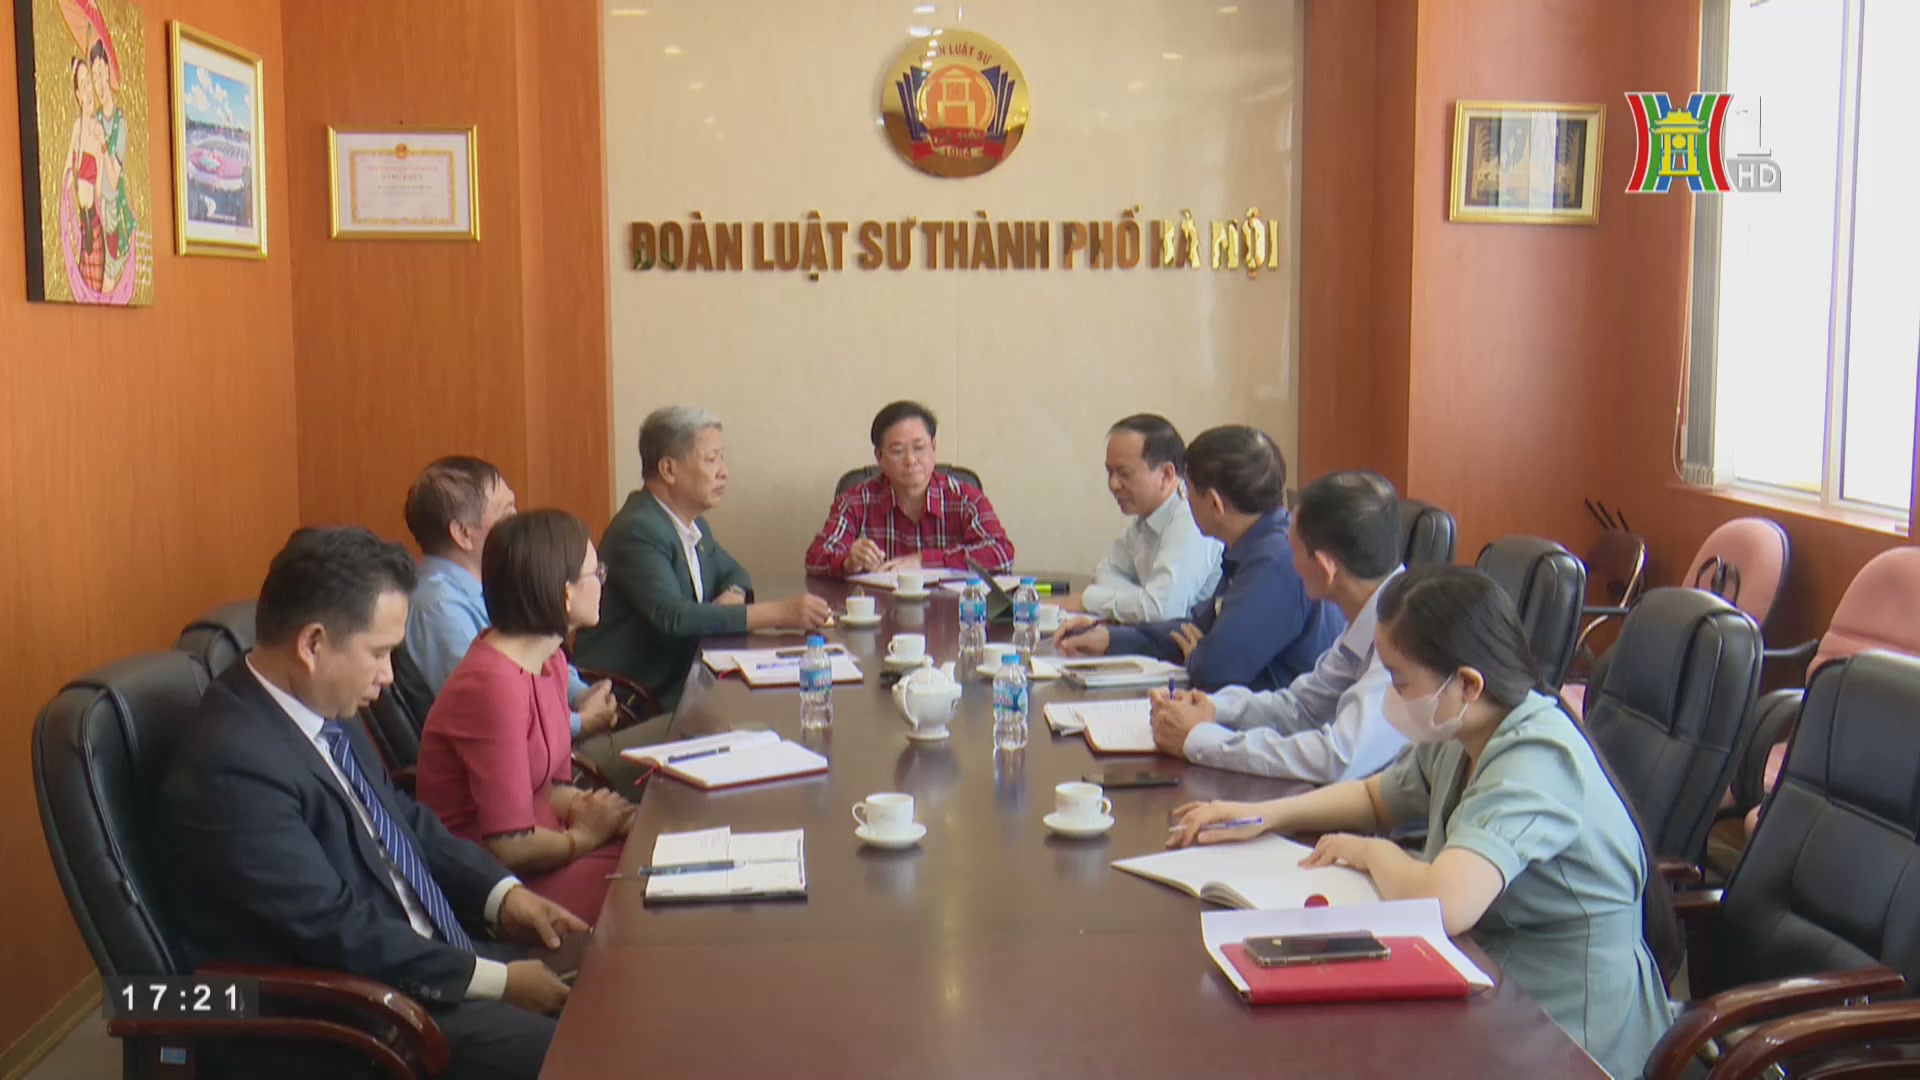 Chi hội Luật gia Hà Nội đổi mới hình thức tuyên truyền phổ biến giáo dục pháp luật